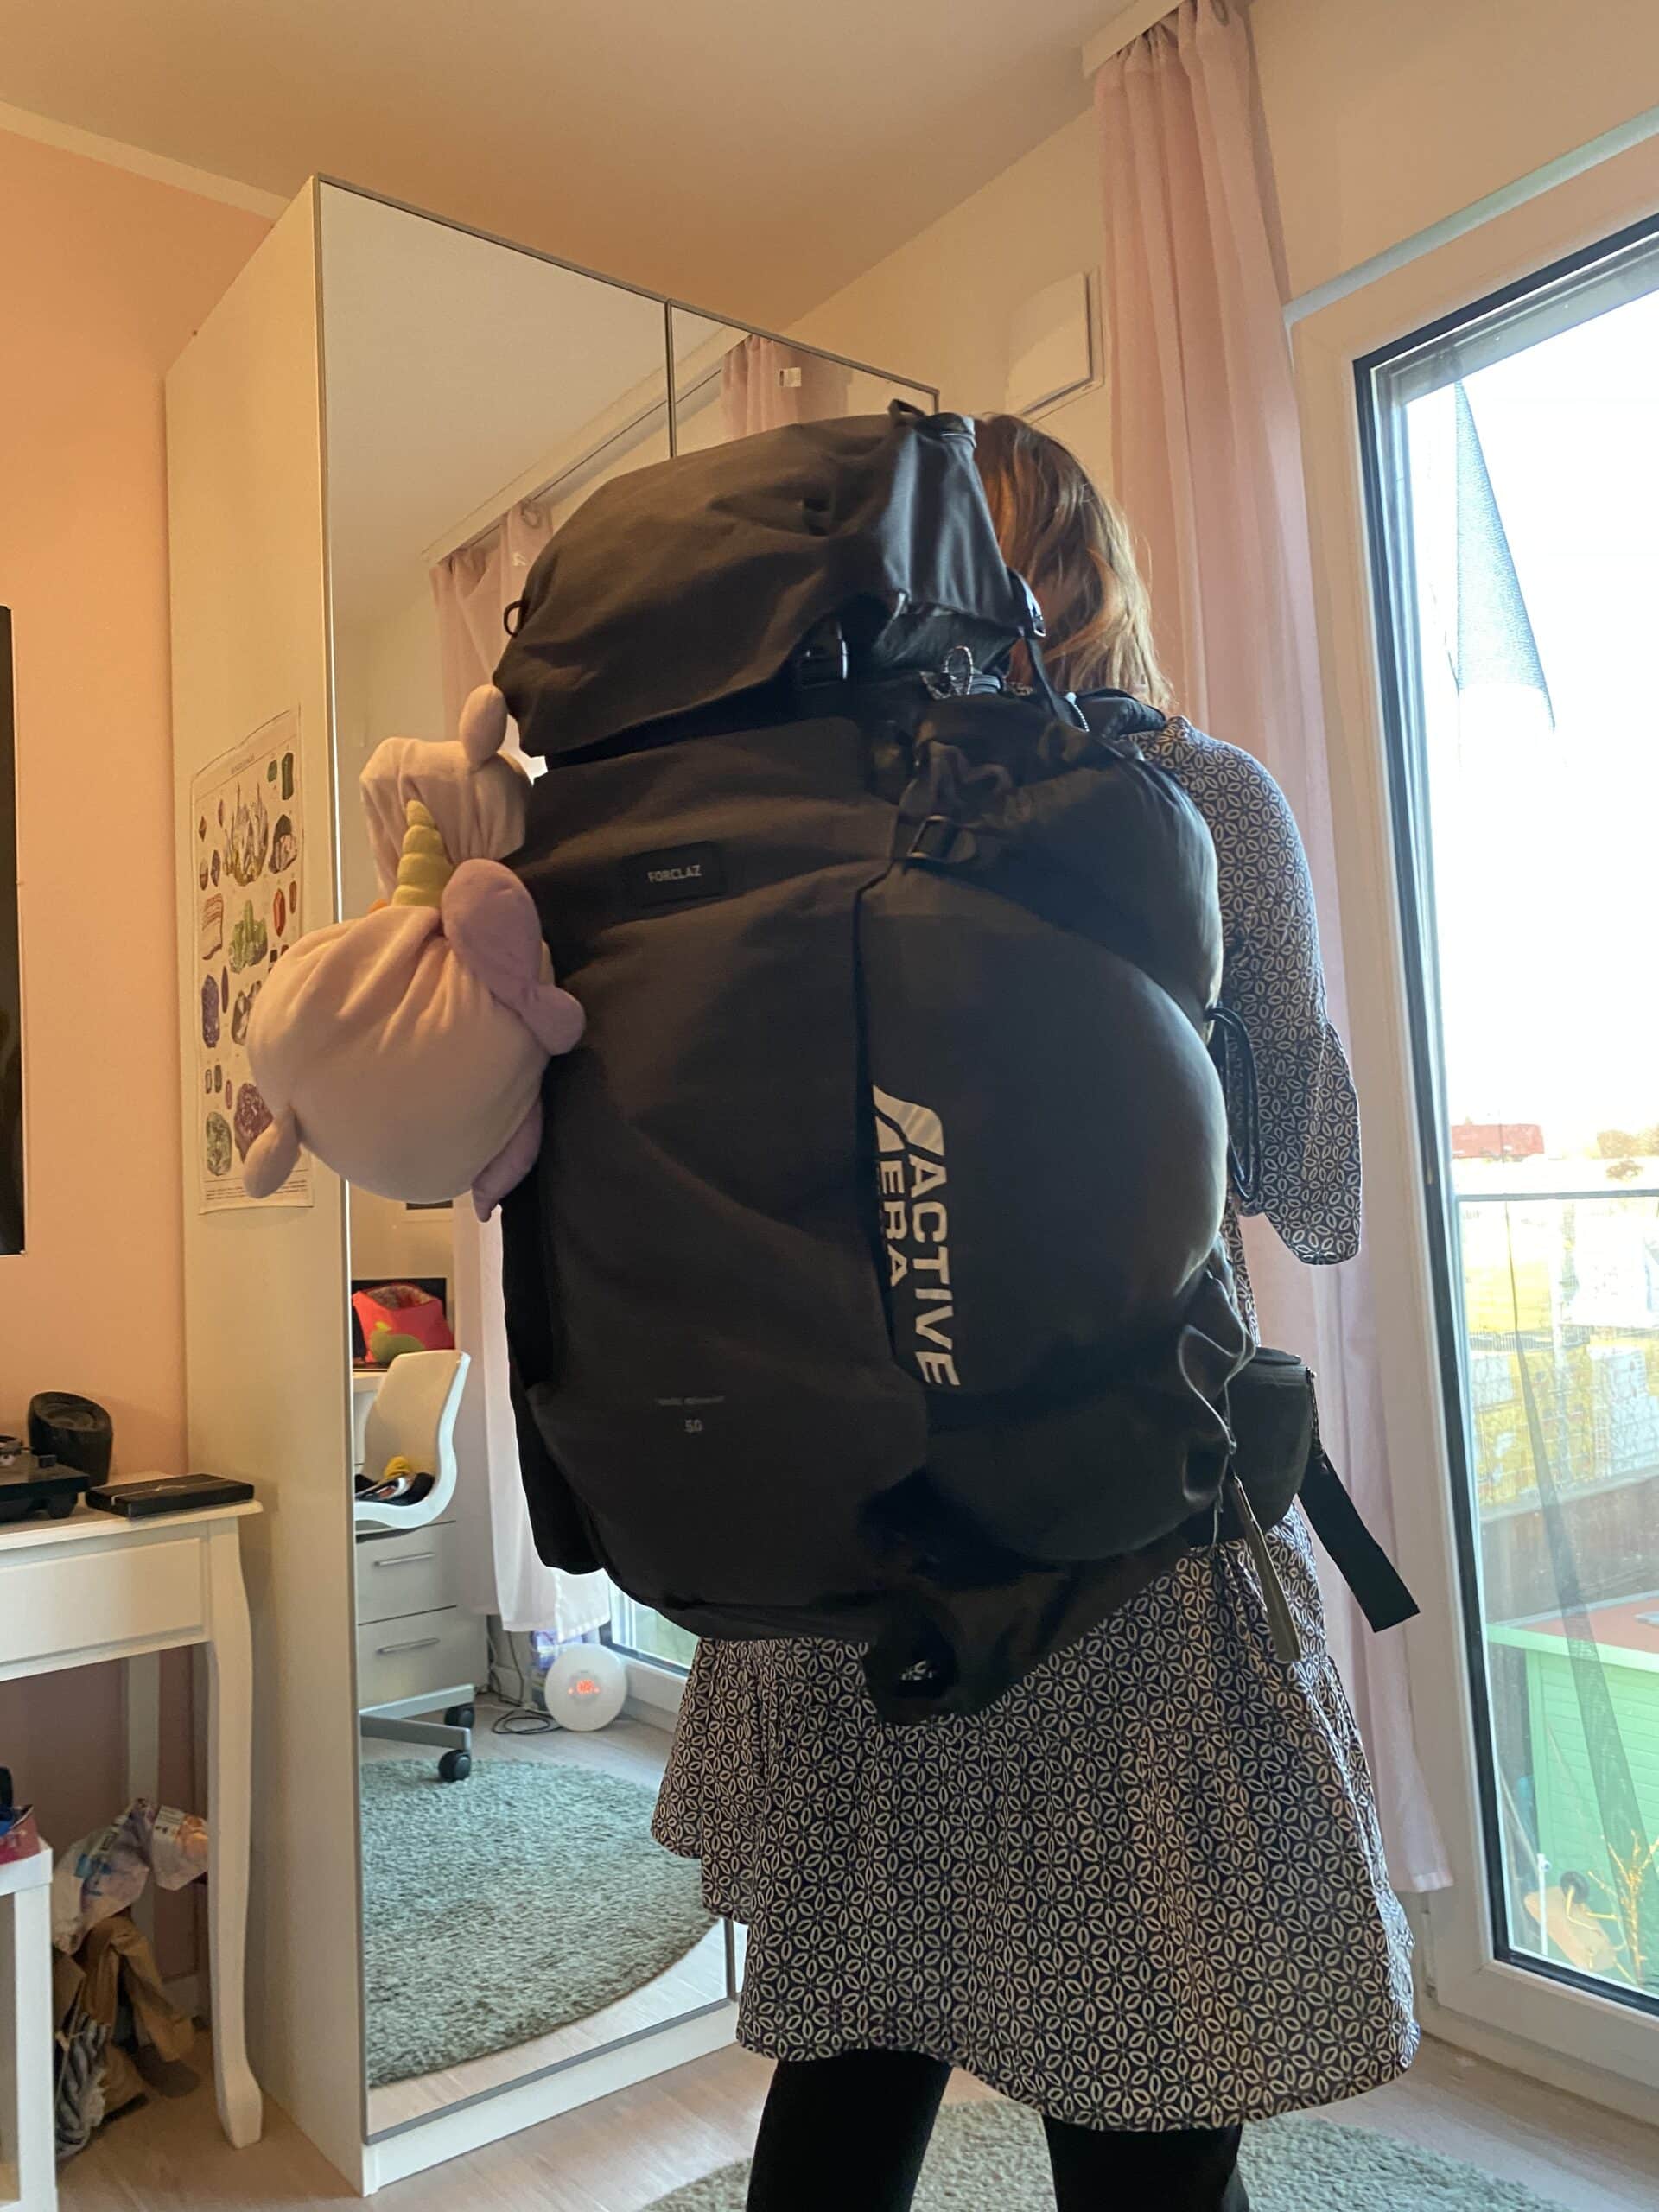 Gemeinsam mit der großen Tochter packen wir den Rucksack für die Reise.